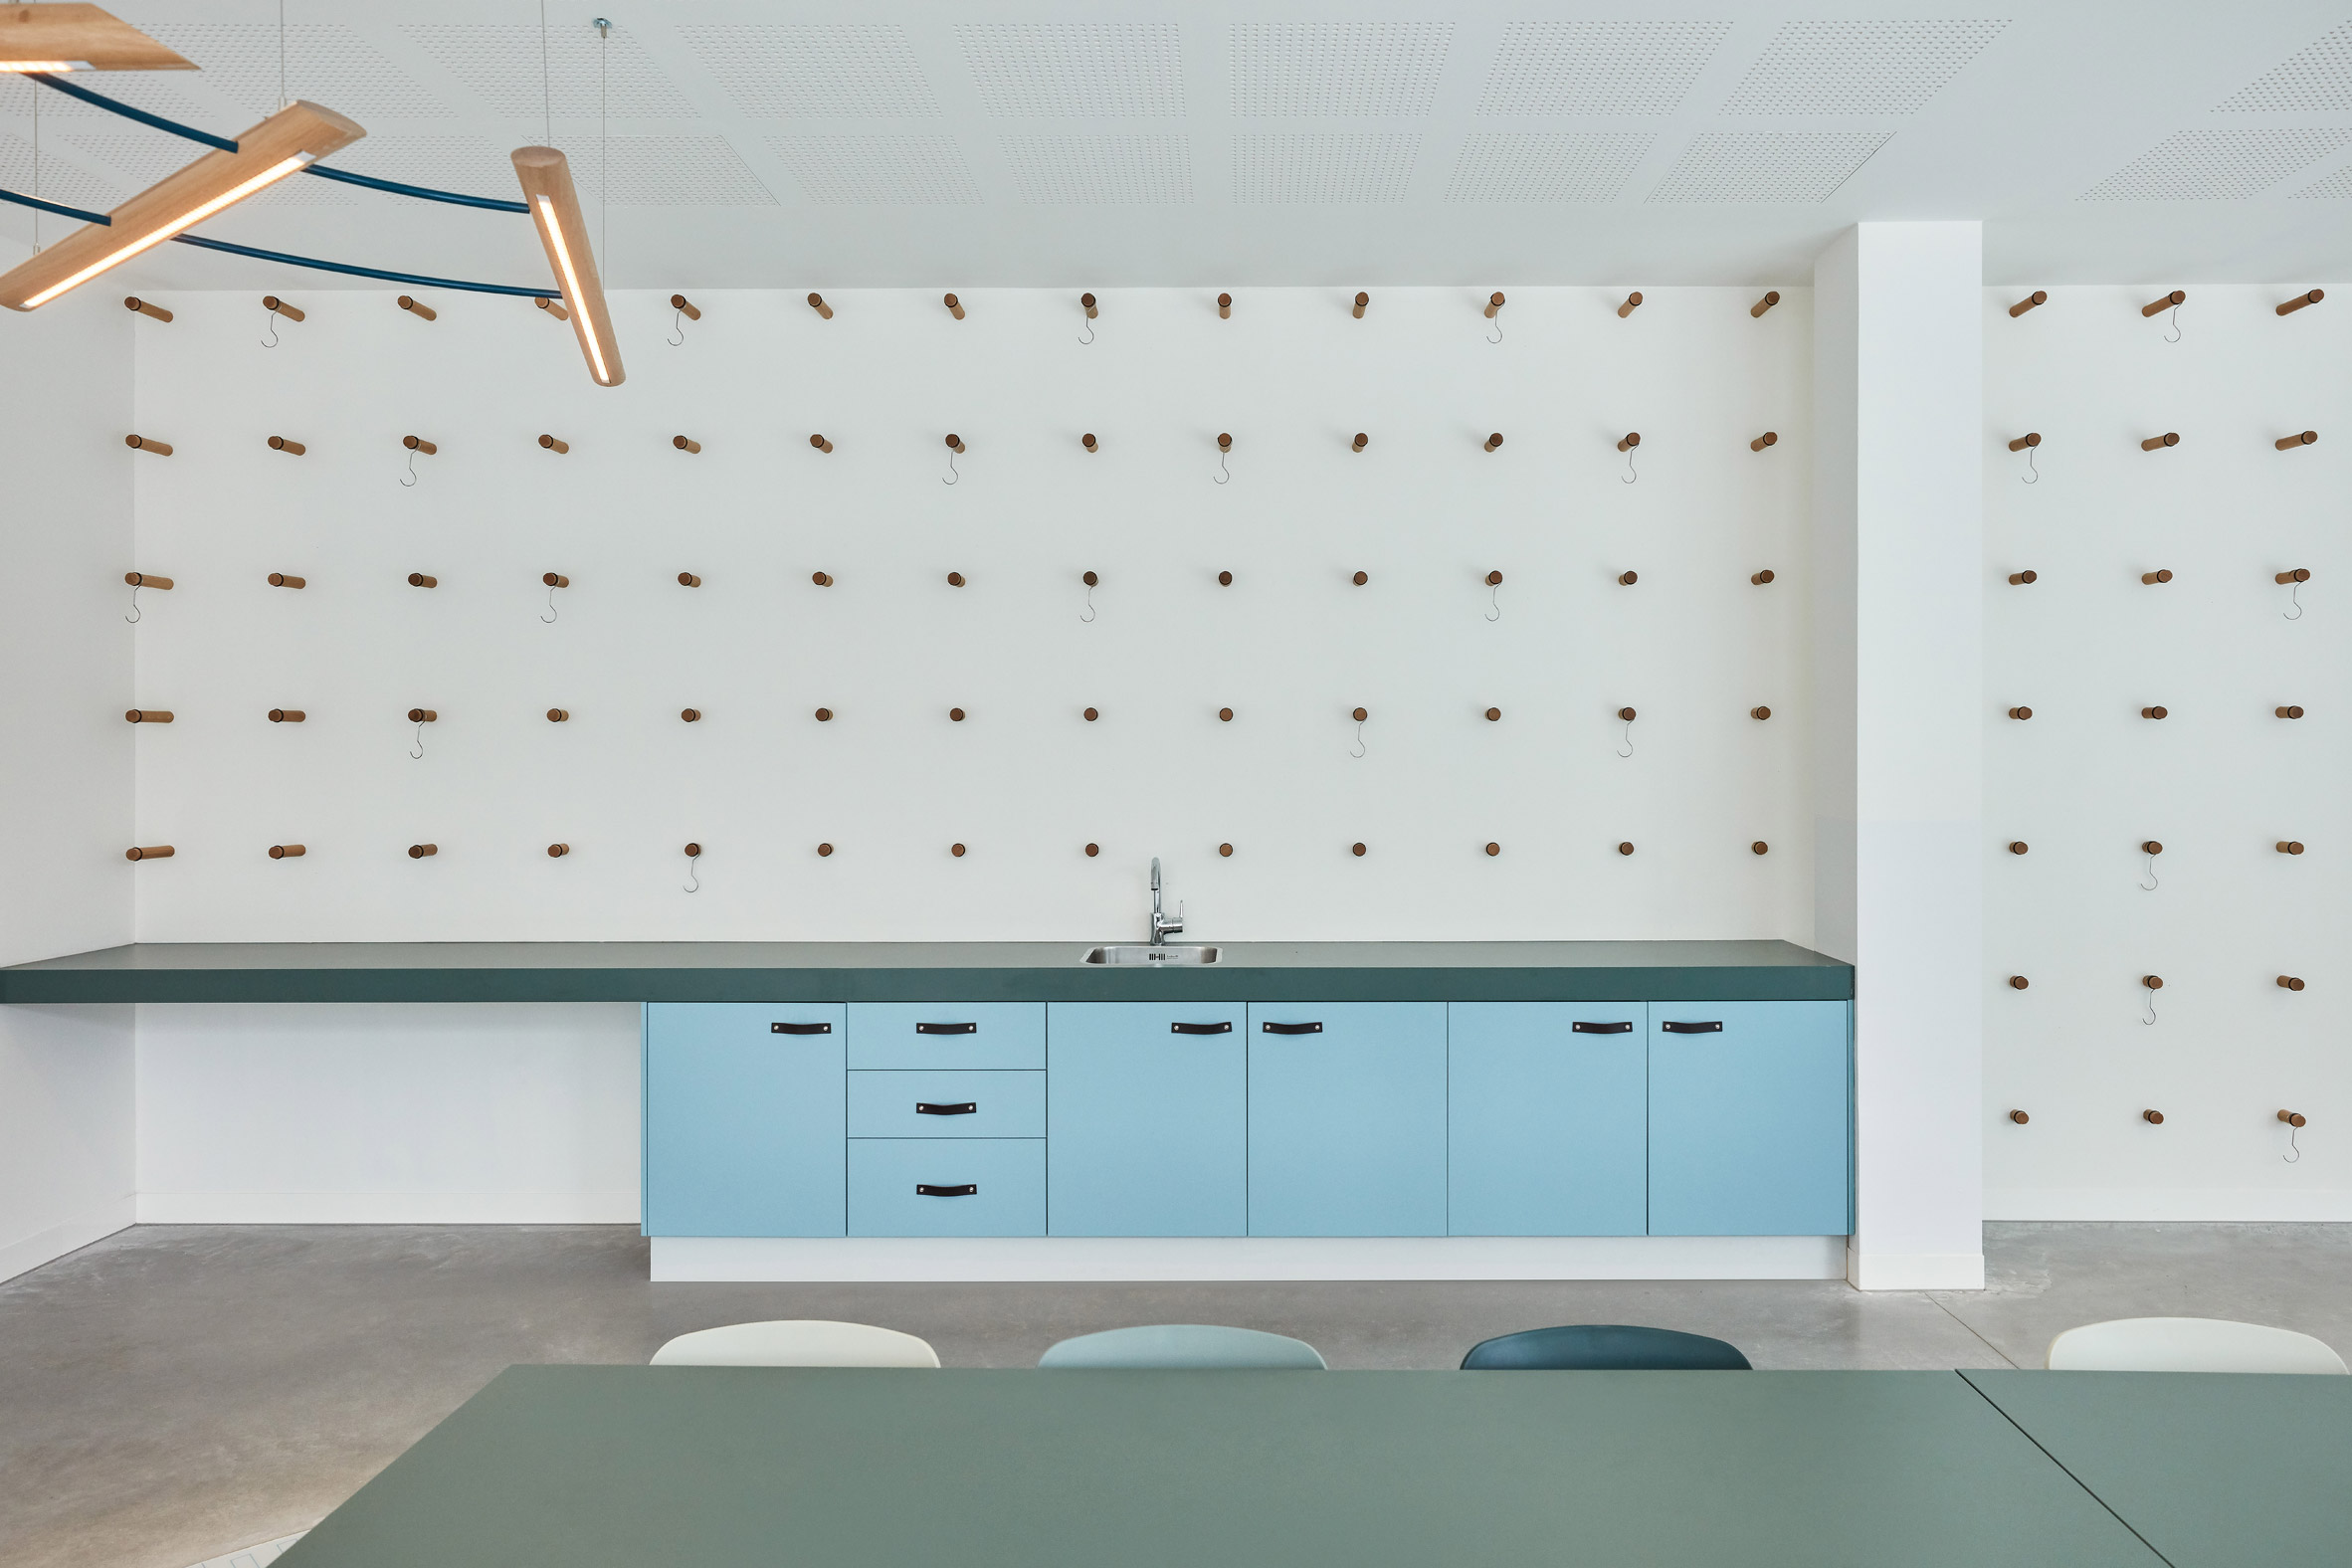 Kitchen in Domstate Zorghotel rehabilitation centre by by Van Eijk & Van der Lubbe, Utrecht